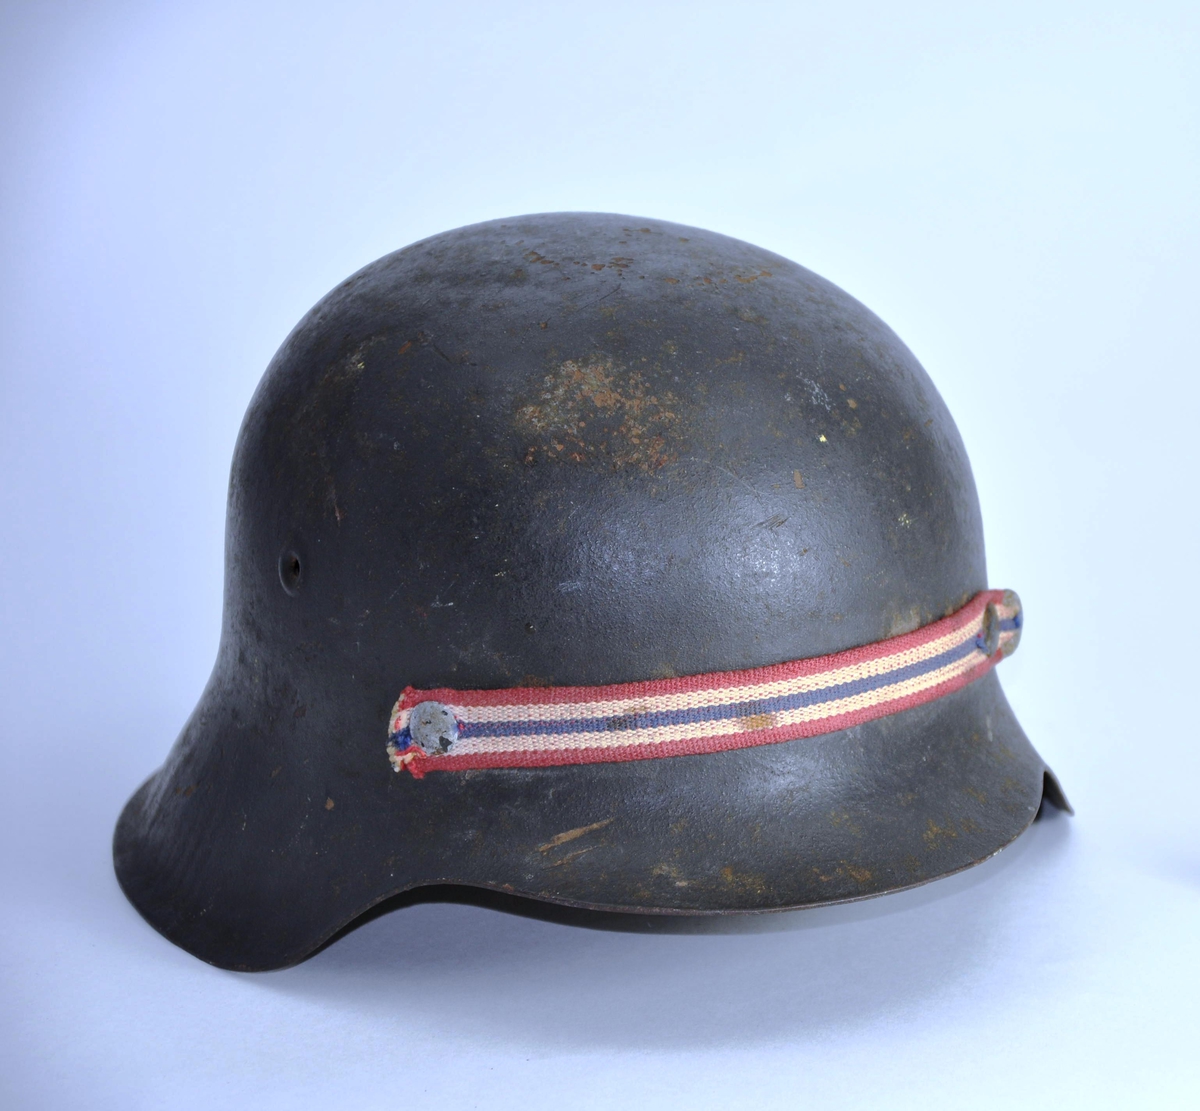 Hjelm i metall, polstret med skinn innvendig. Rem til å ha under haken. Hjelmen er opprinnelig tysk, M1943, men er "nasjonalisert" ved bortskrapning av tysk emblem og med påklinket bånd i norske farger.